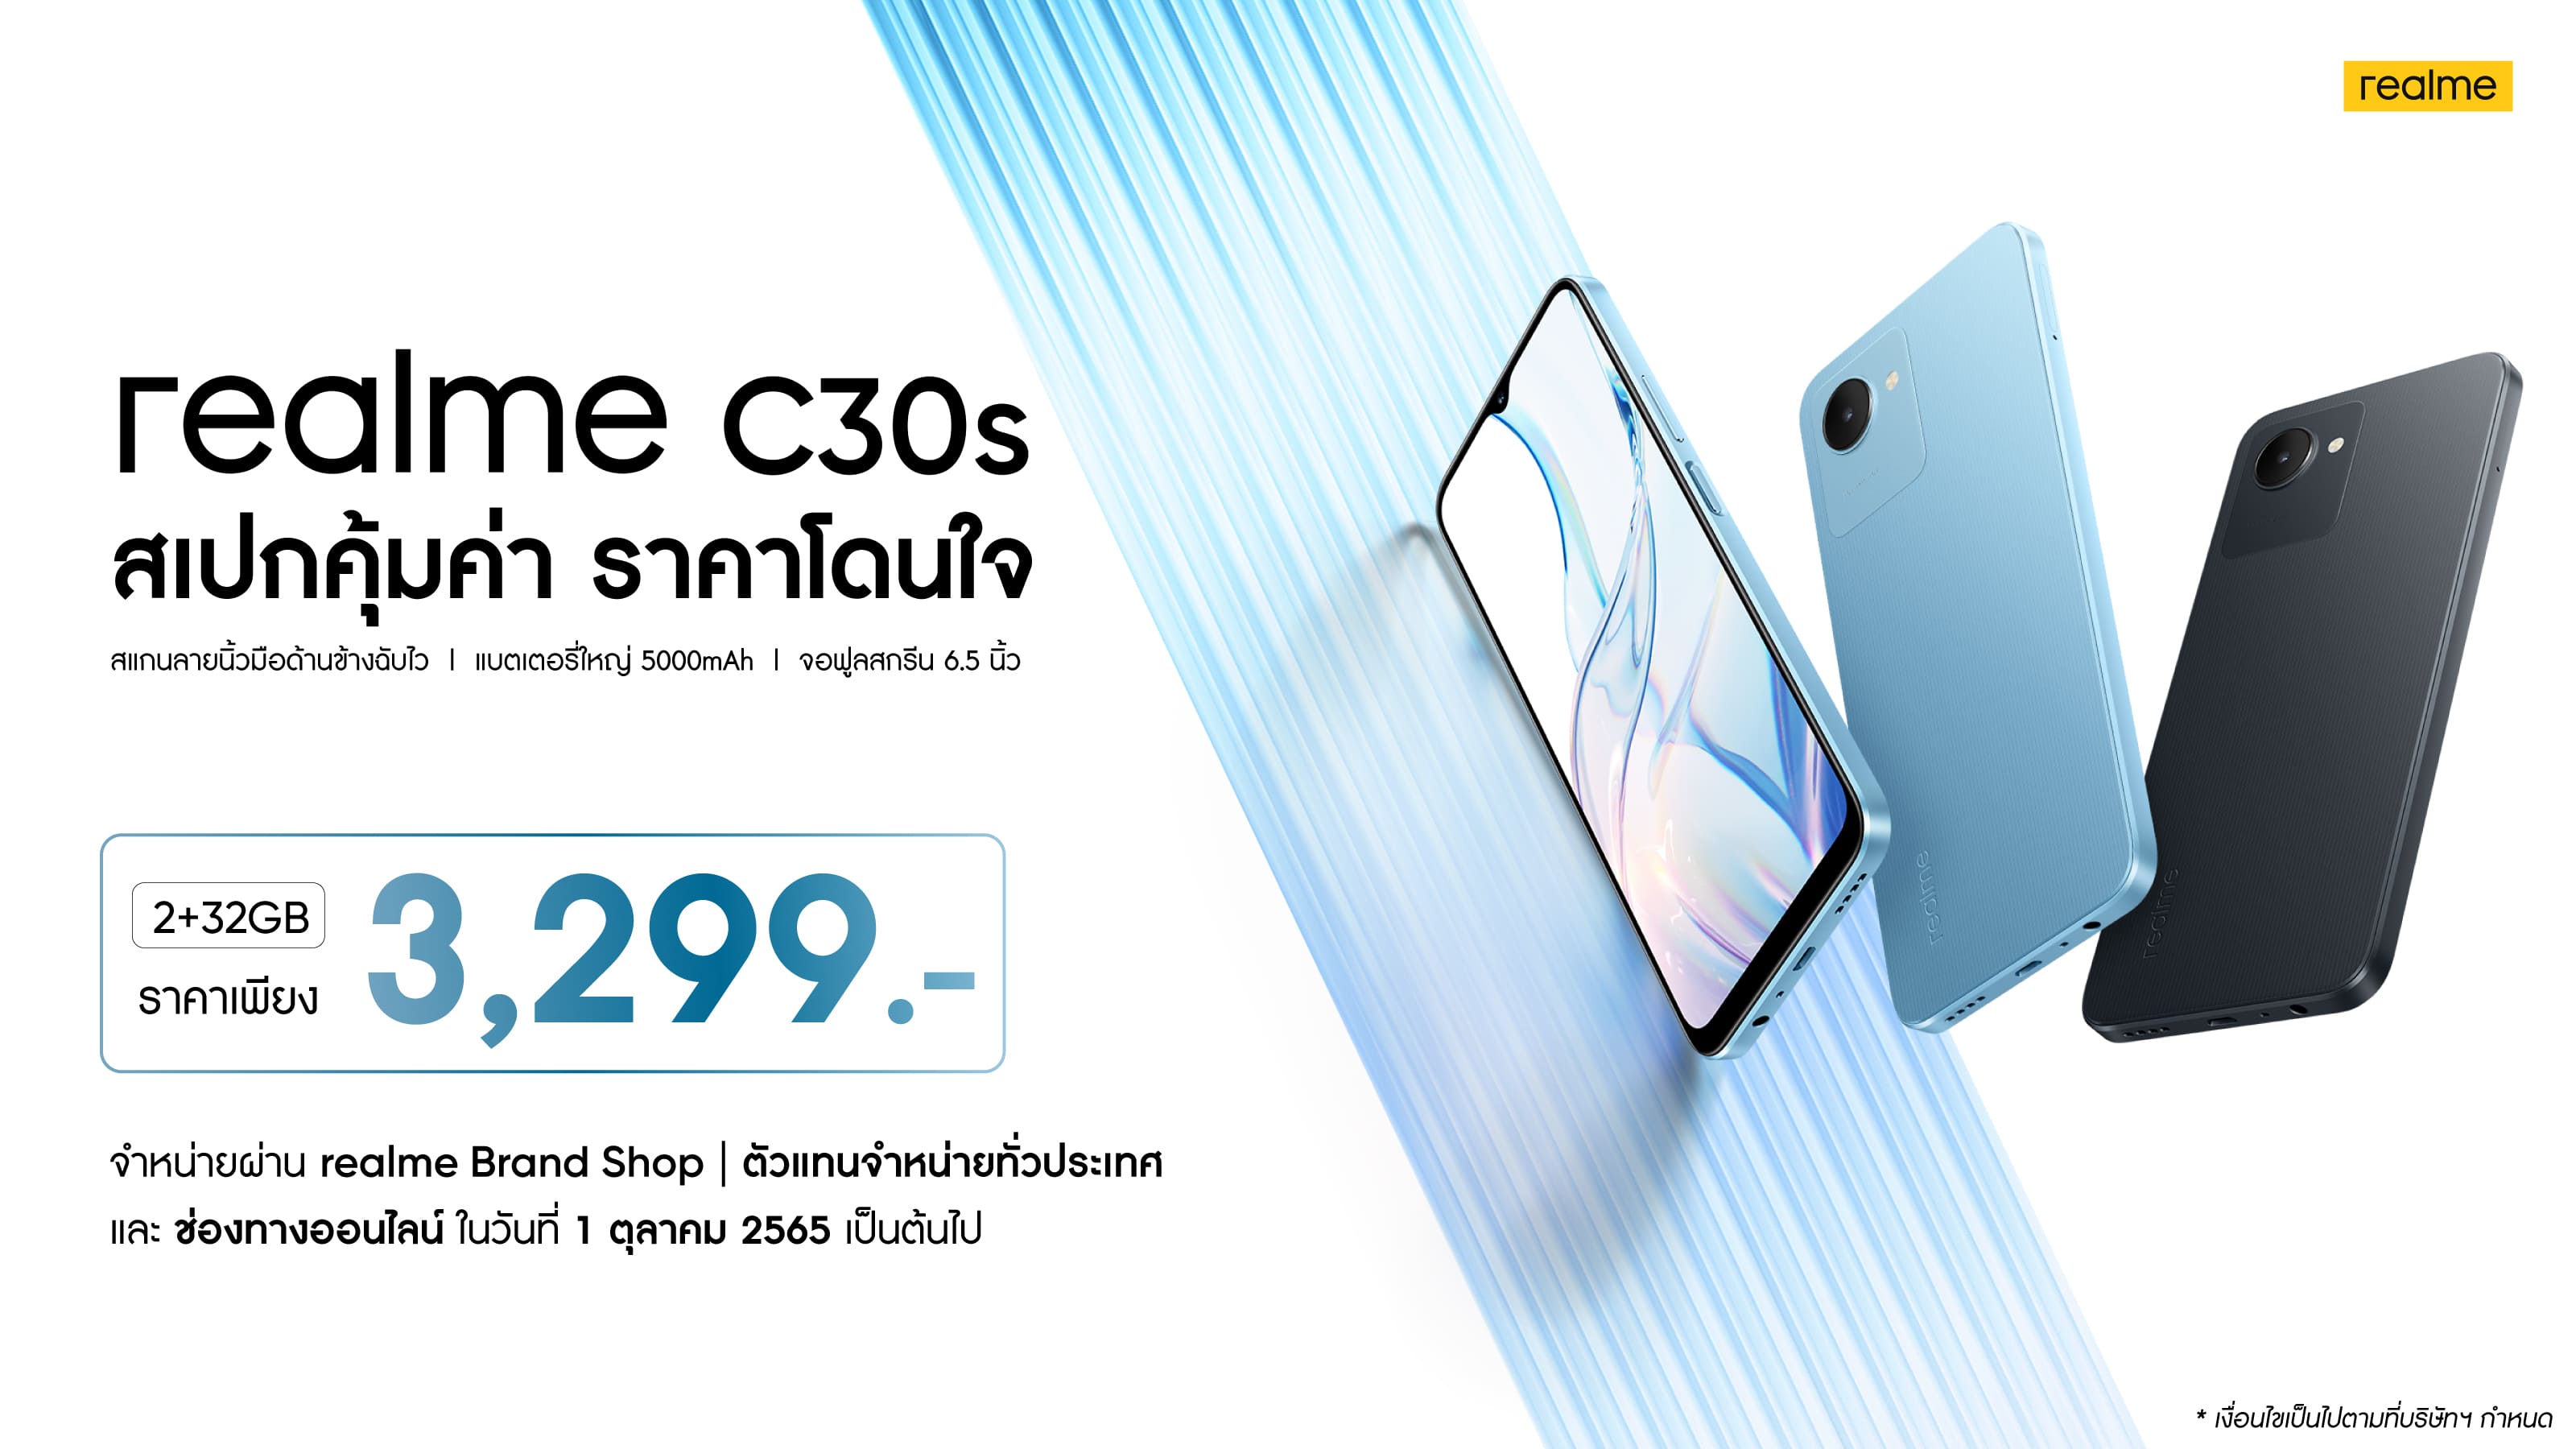 เรียลมี เปิดตัว realme C30s ในไทย ราคาสุดคุ้มเพียง 3,299 บาท! ยืนหนึ่งสมาร์ตโฟน Entry-level ที่แข็งแกร่งที่สุด ชูแบตอึด สเปกขั้นเทพ